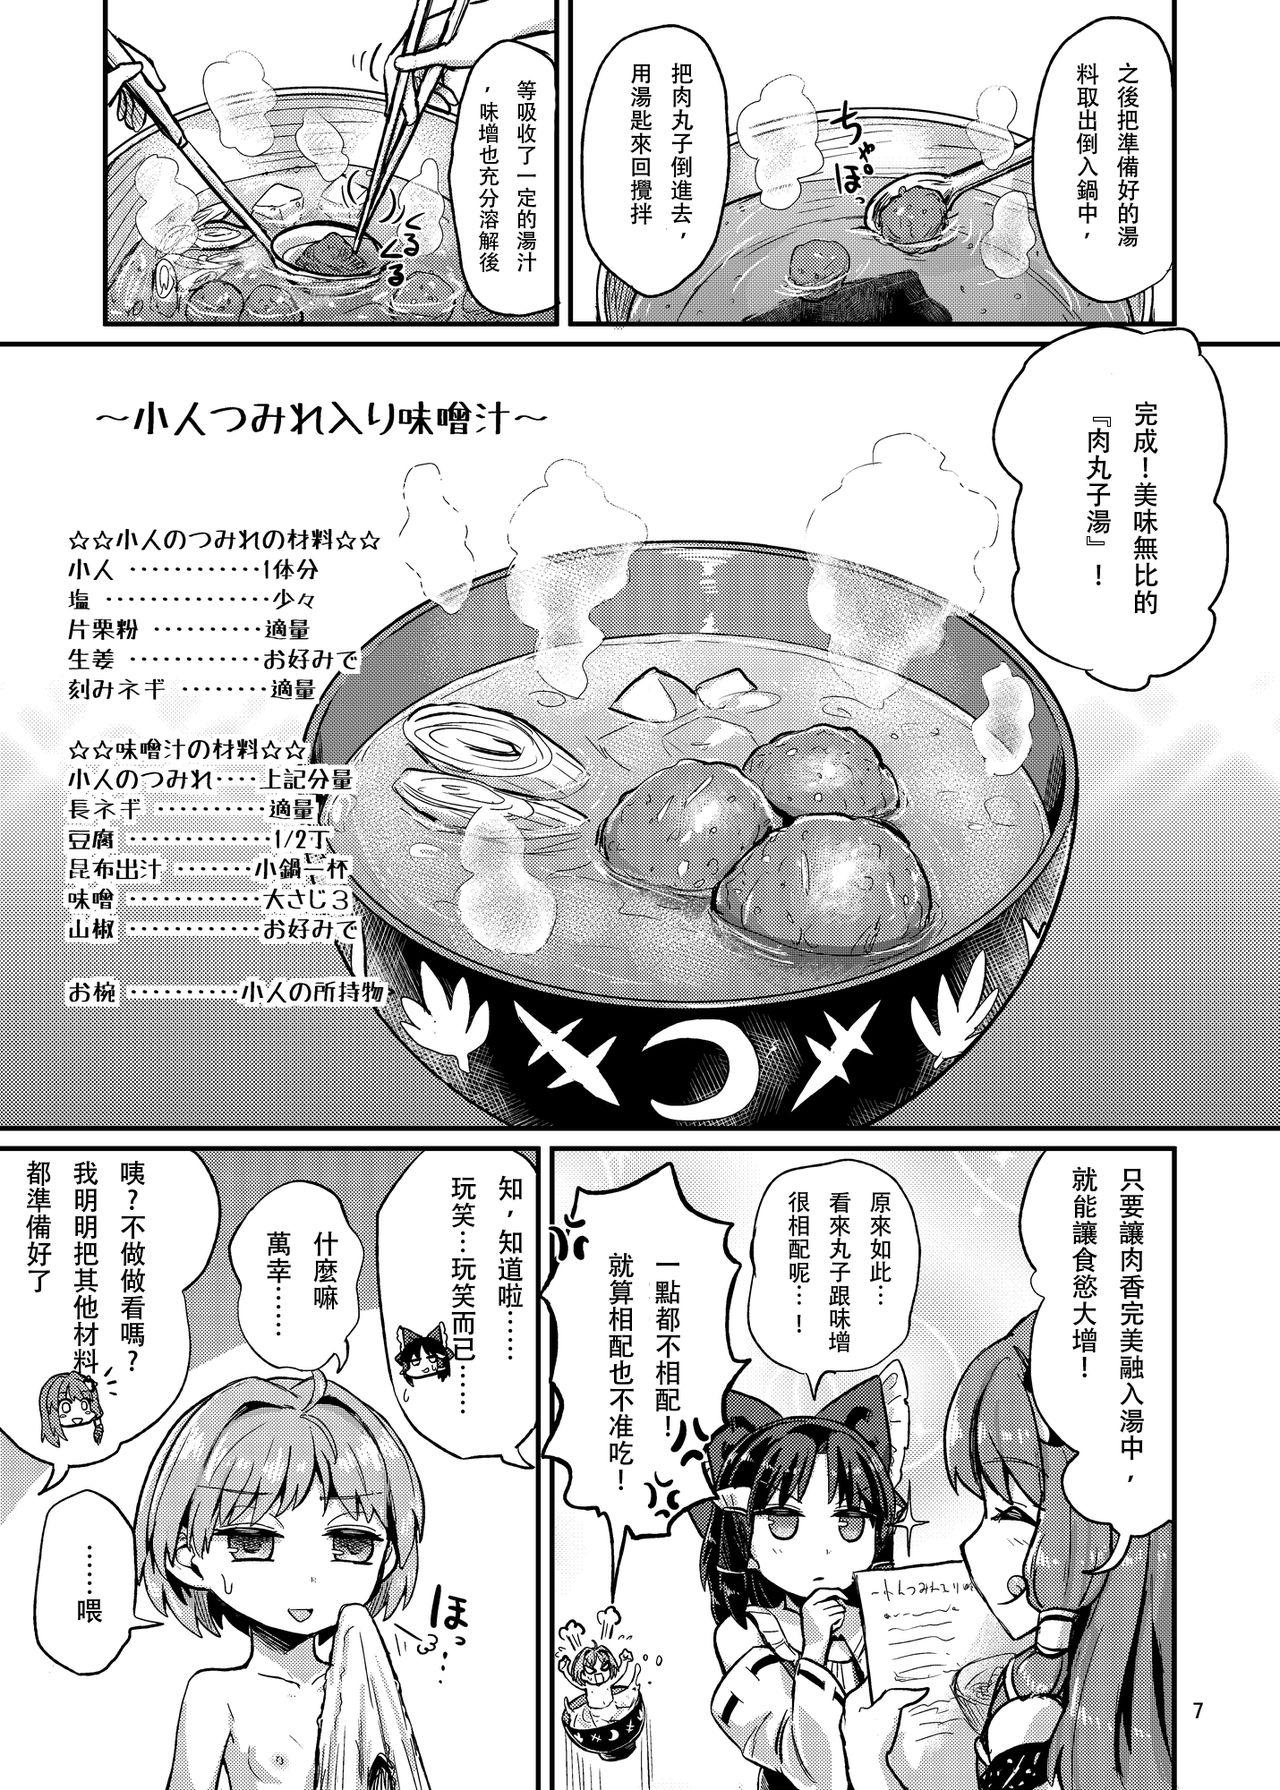 Sekai Ichi Kawaii Misoshiru no Gu |世界第一可愛的味增湯食材 5